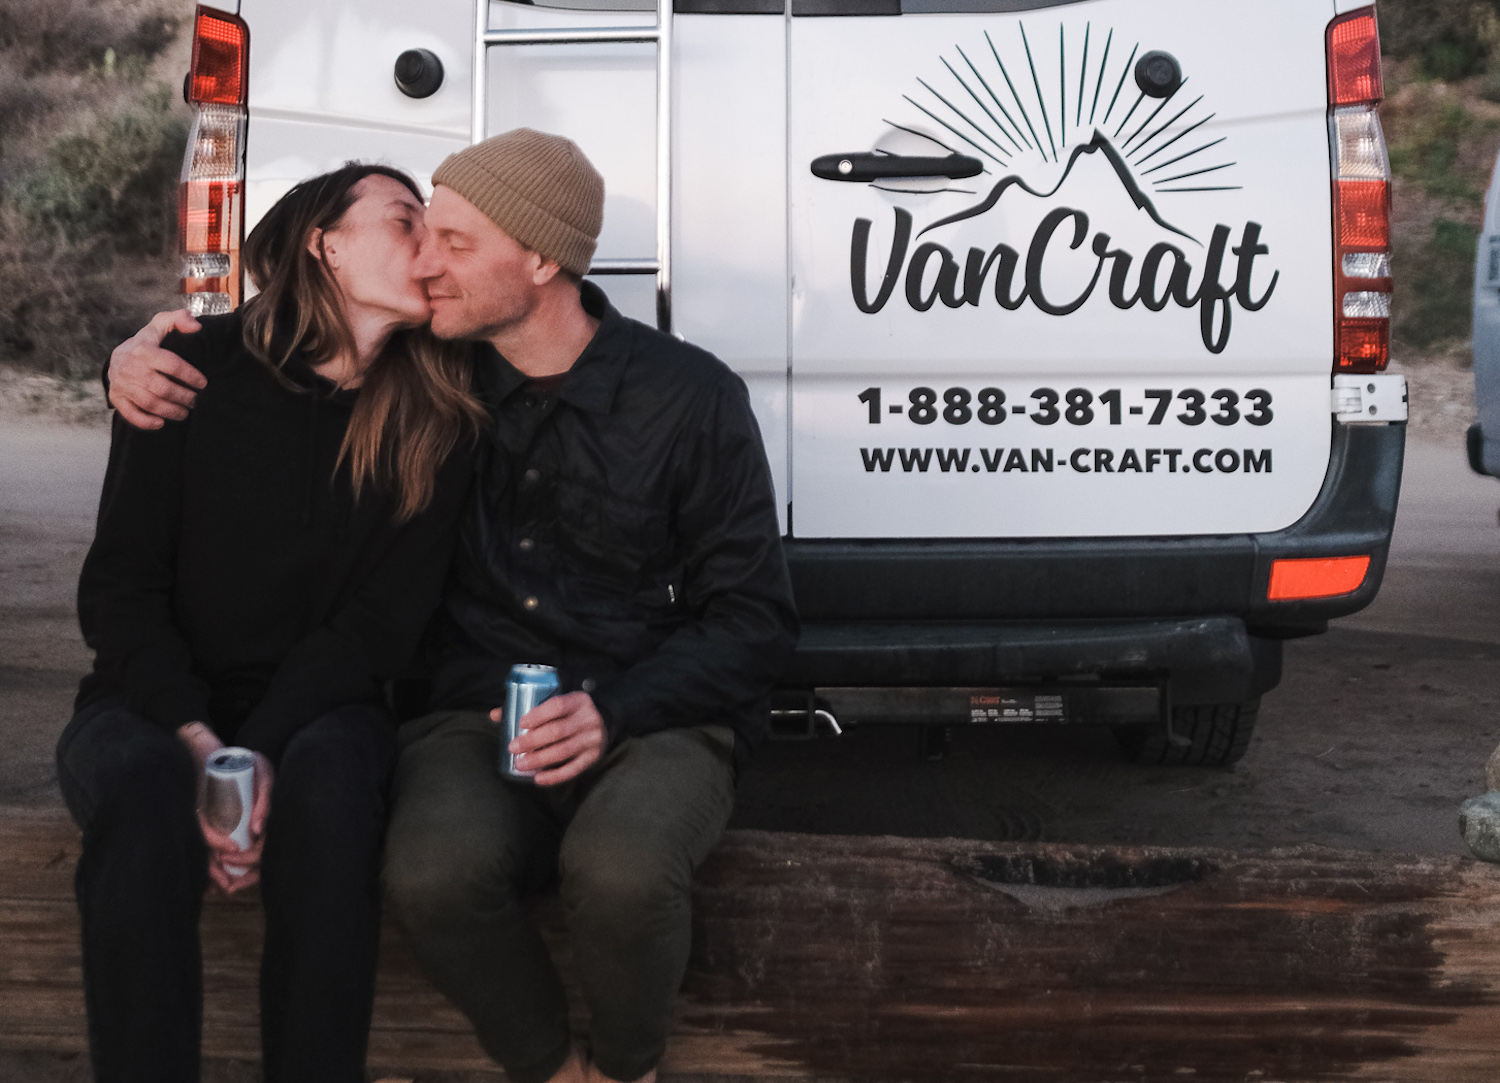 julien and karo go-van with van craft